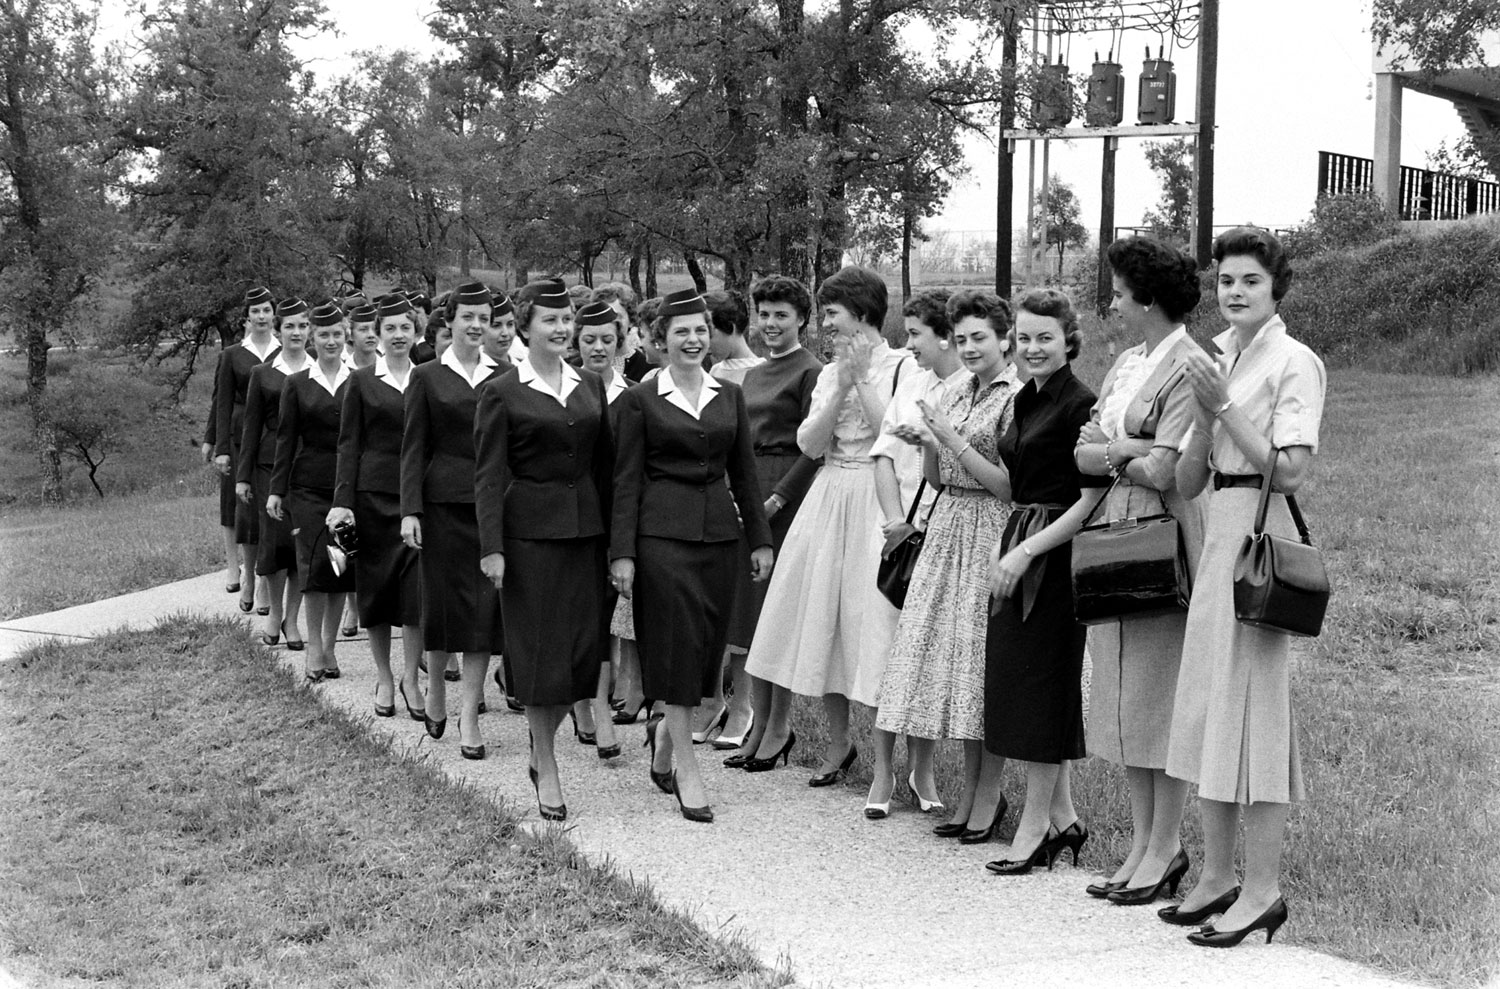 Stewardess school, Texas, 1958.